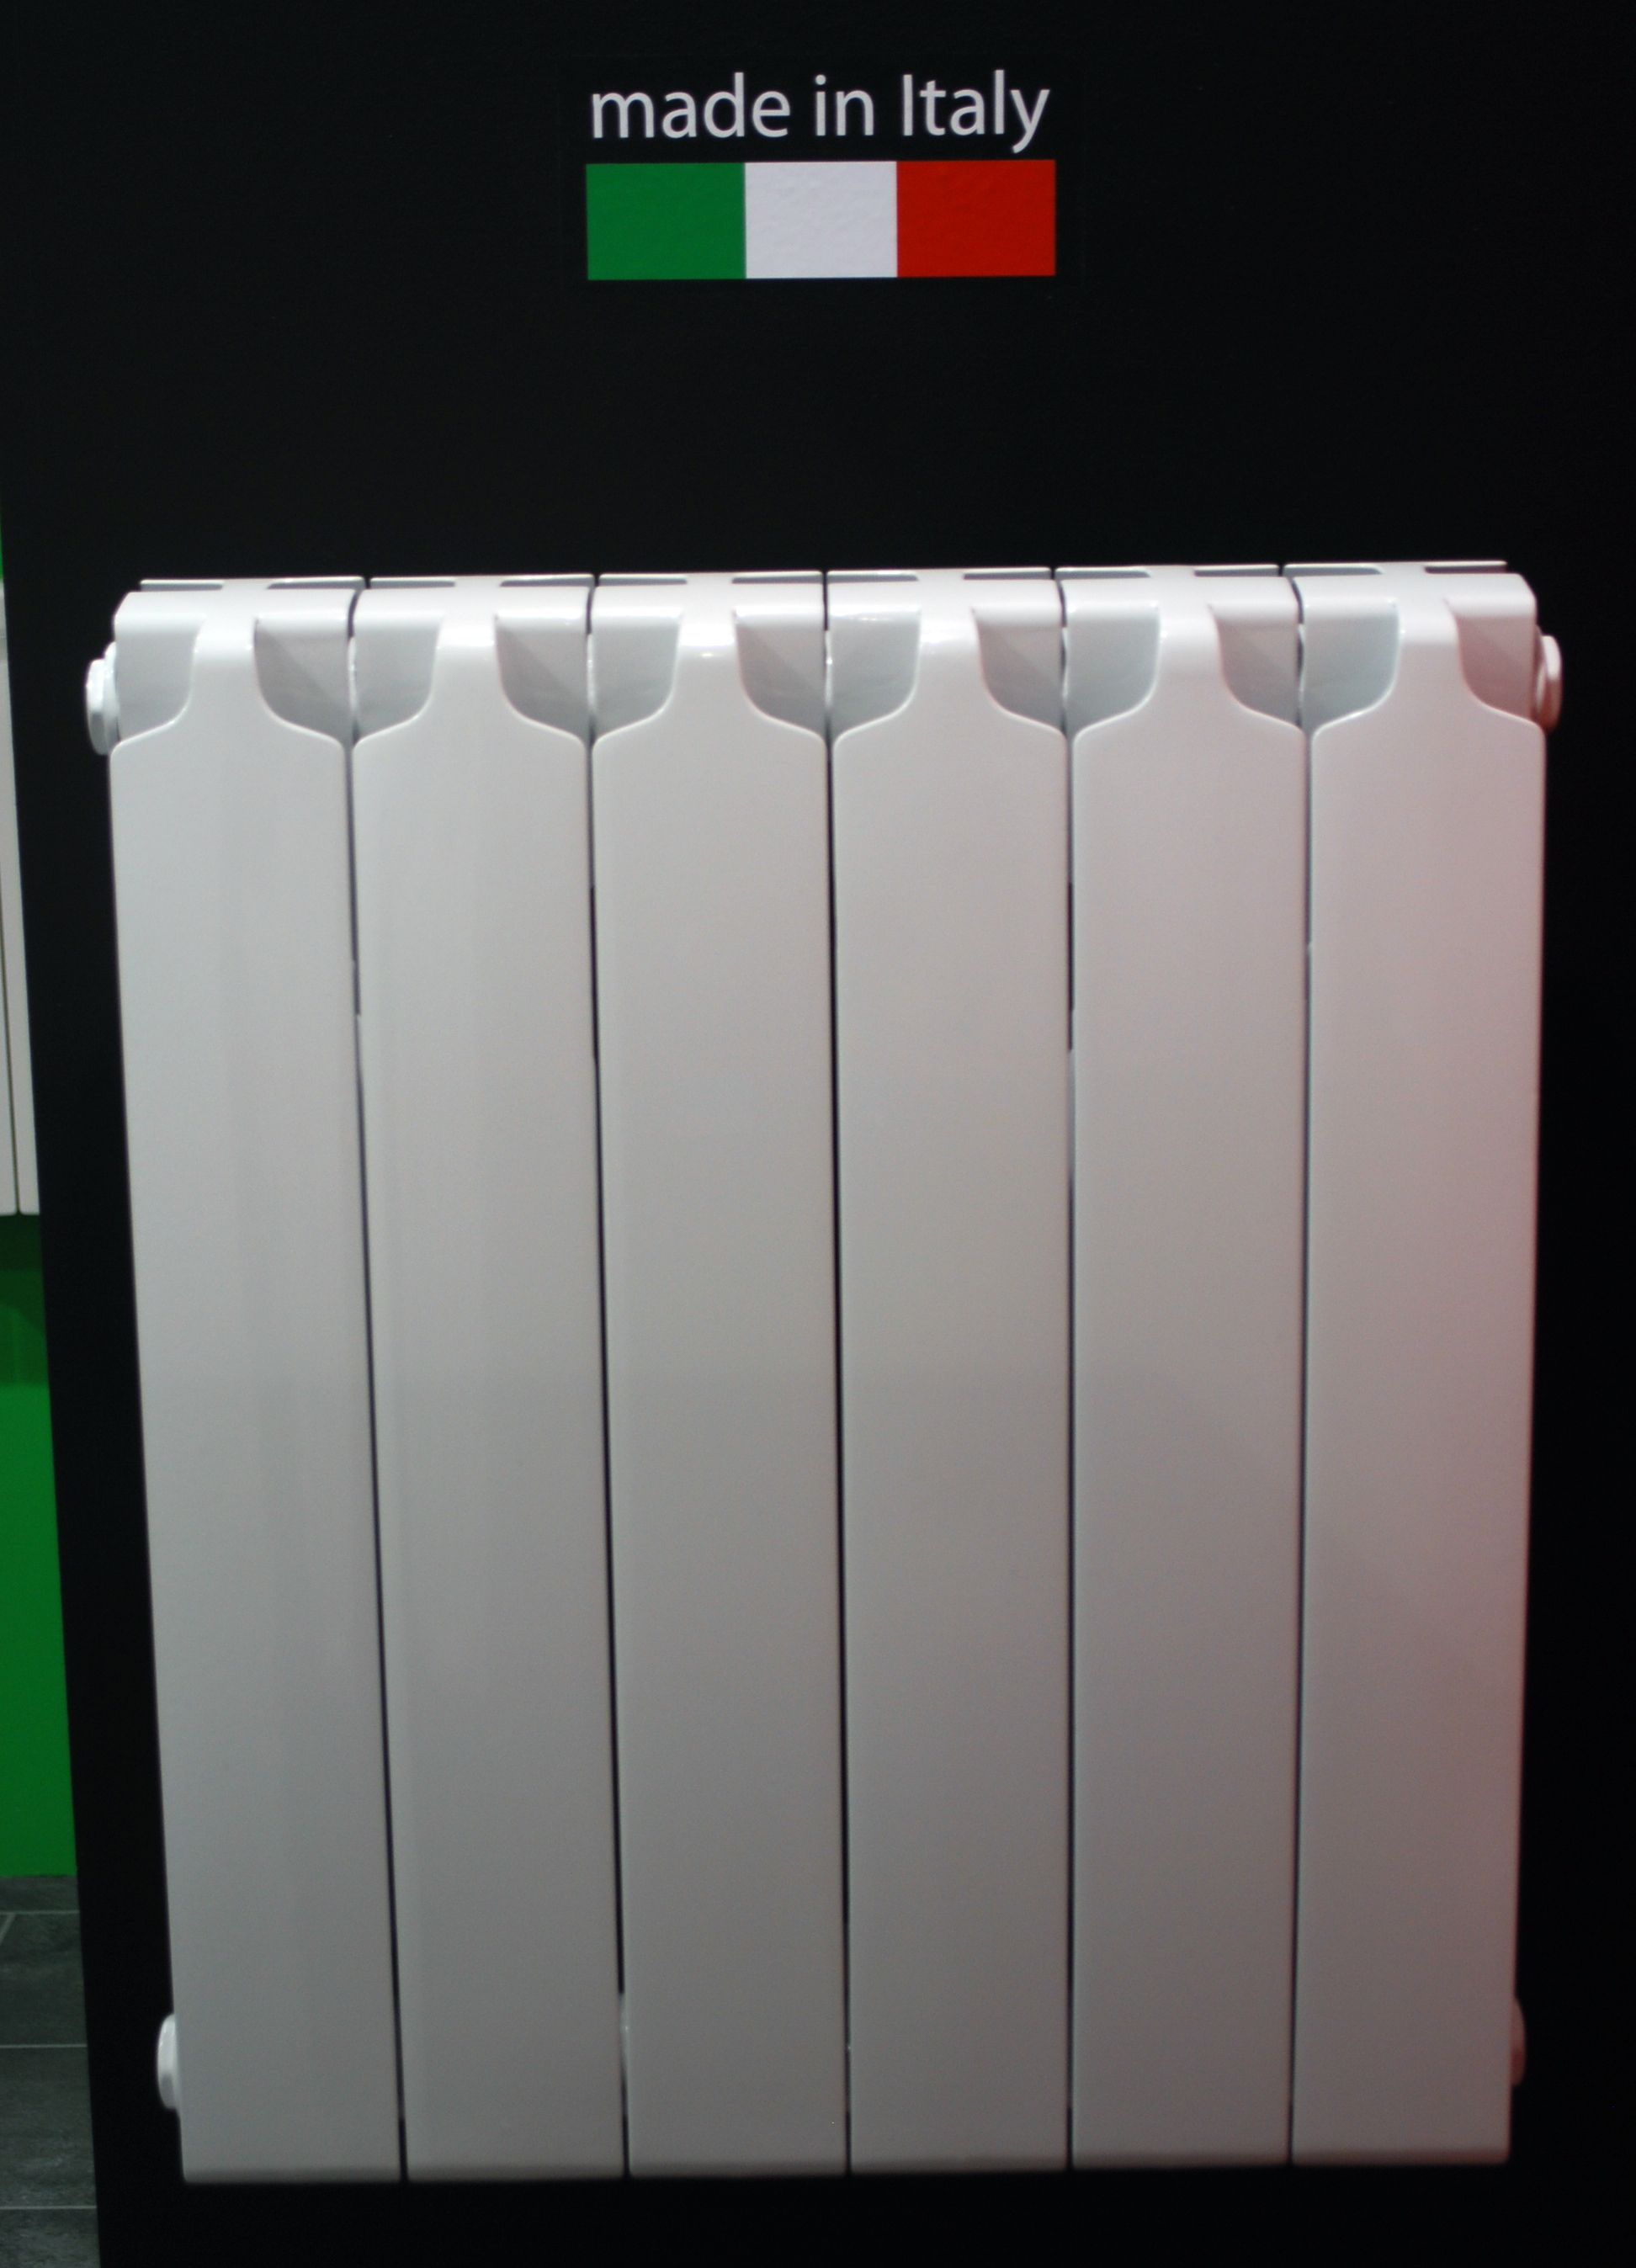 Обзор радиаторов отопления Sira: биметаллических и алюминиевых